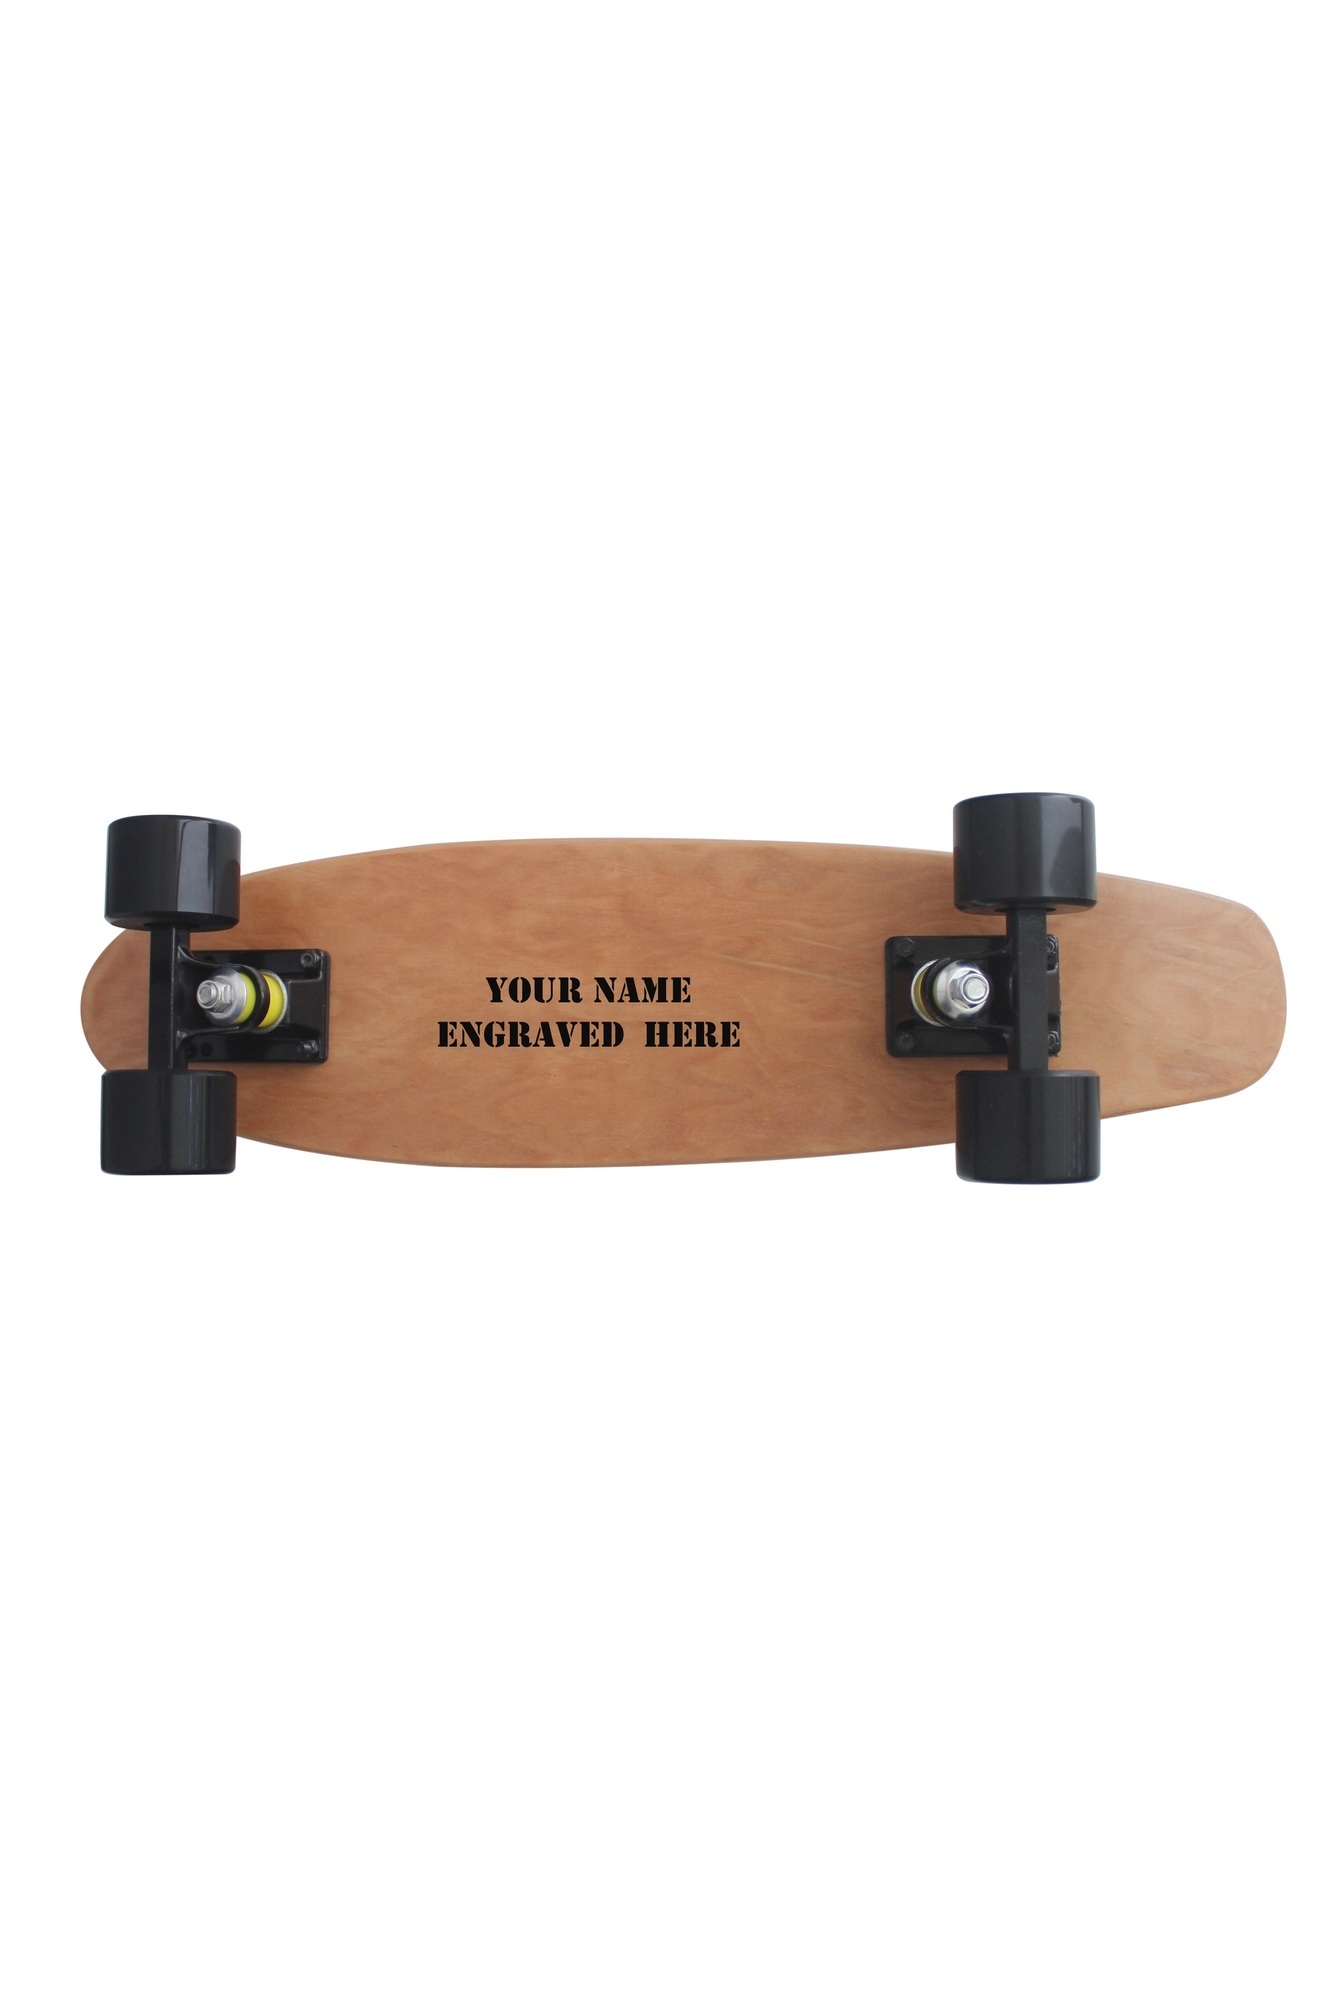 Personalised skateboard